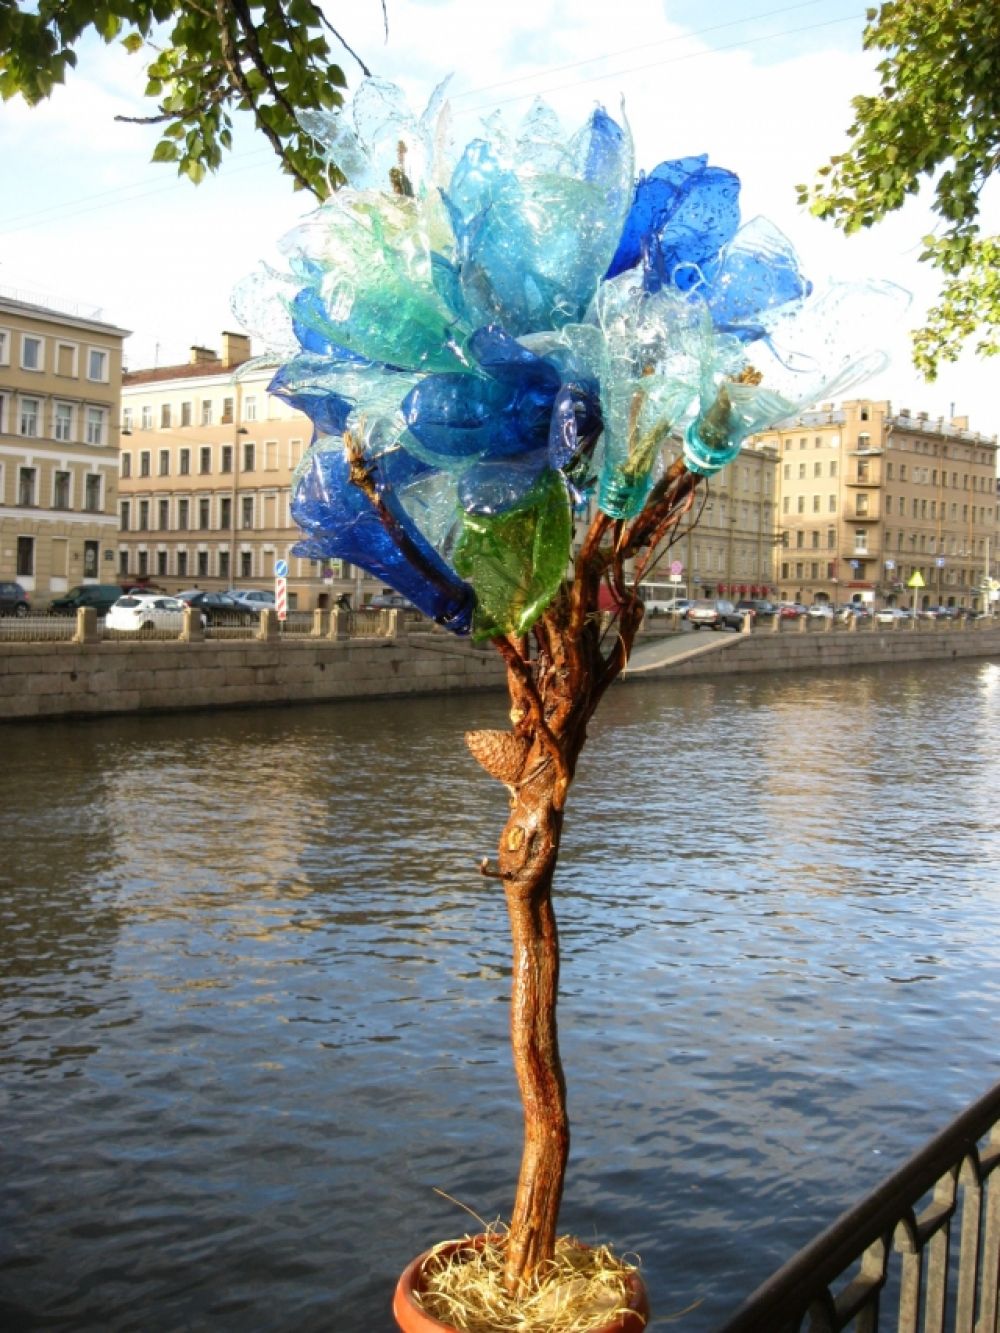 Бутылочное дерево гармонично вписалось в петербургский пейзаж.